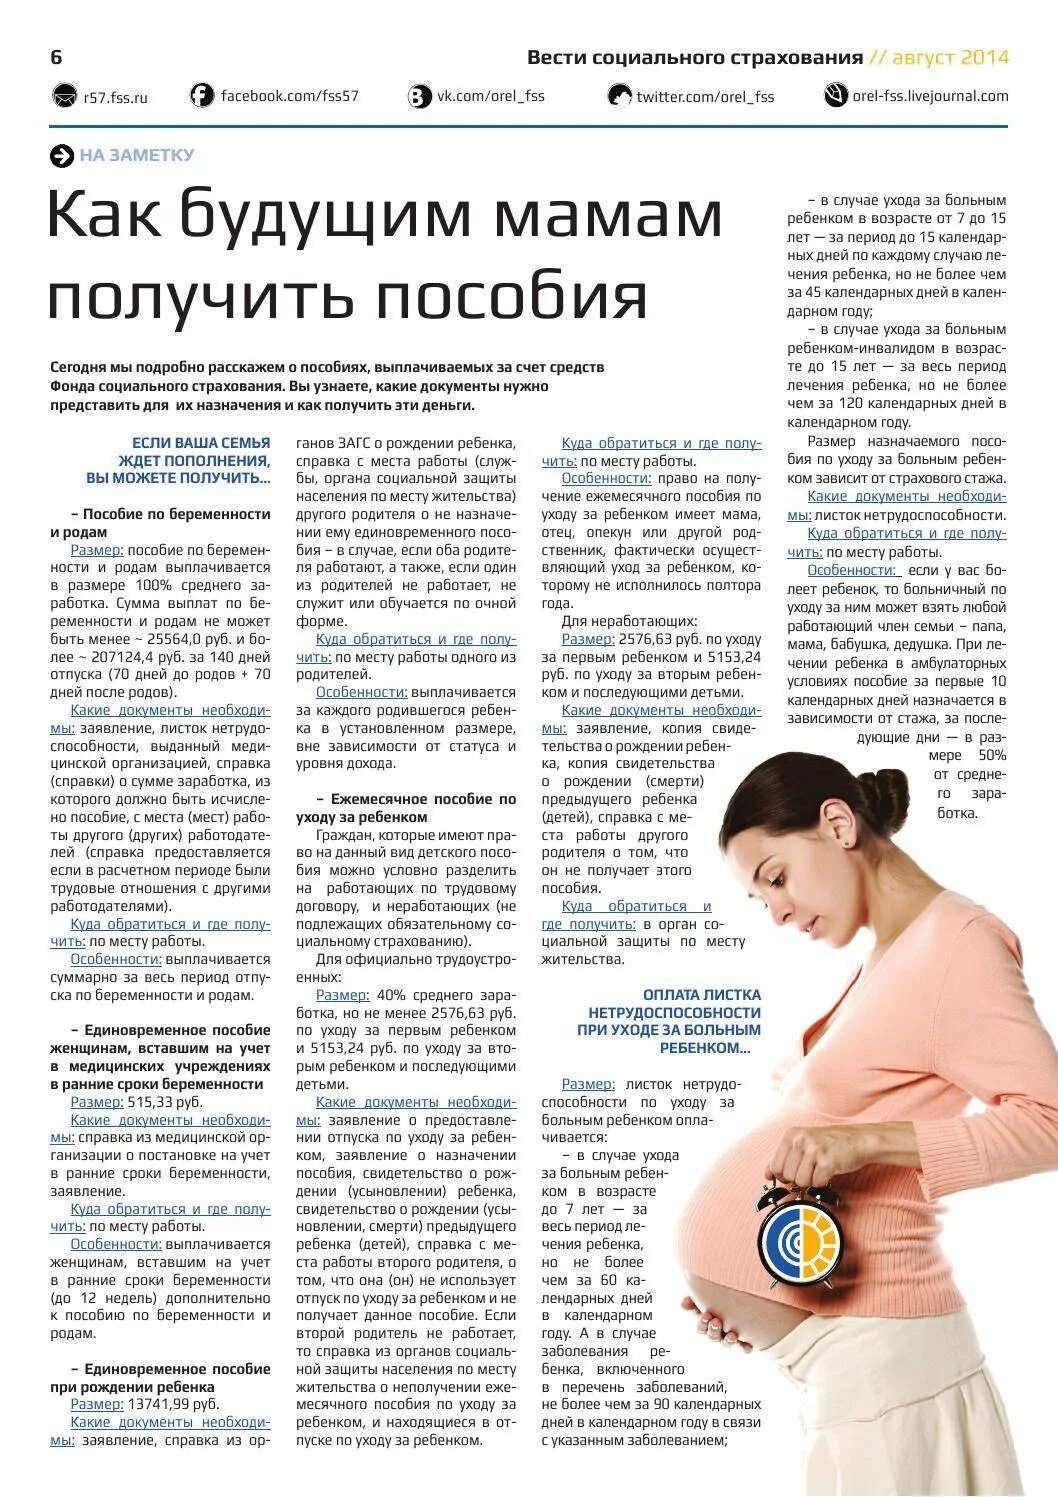 Вторая беременность пособия. Выплаты по беременности и родам. Пособия при беременности. Пособие для беременных женщин. Выплаты беременным женщинам.